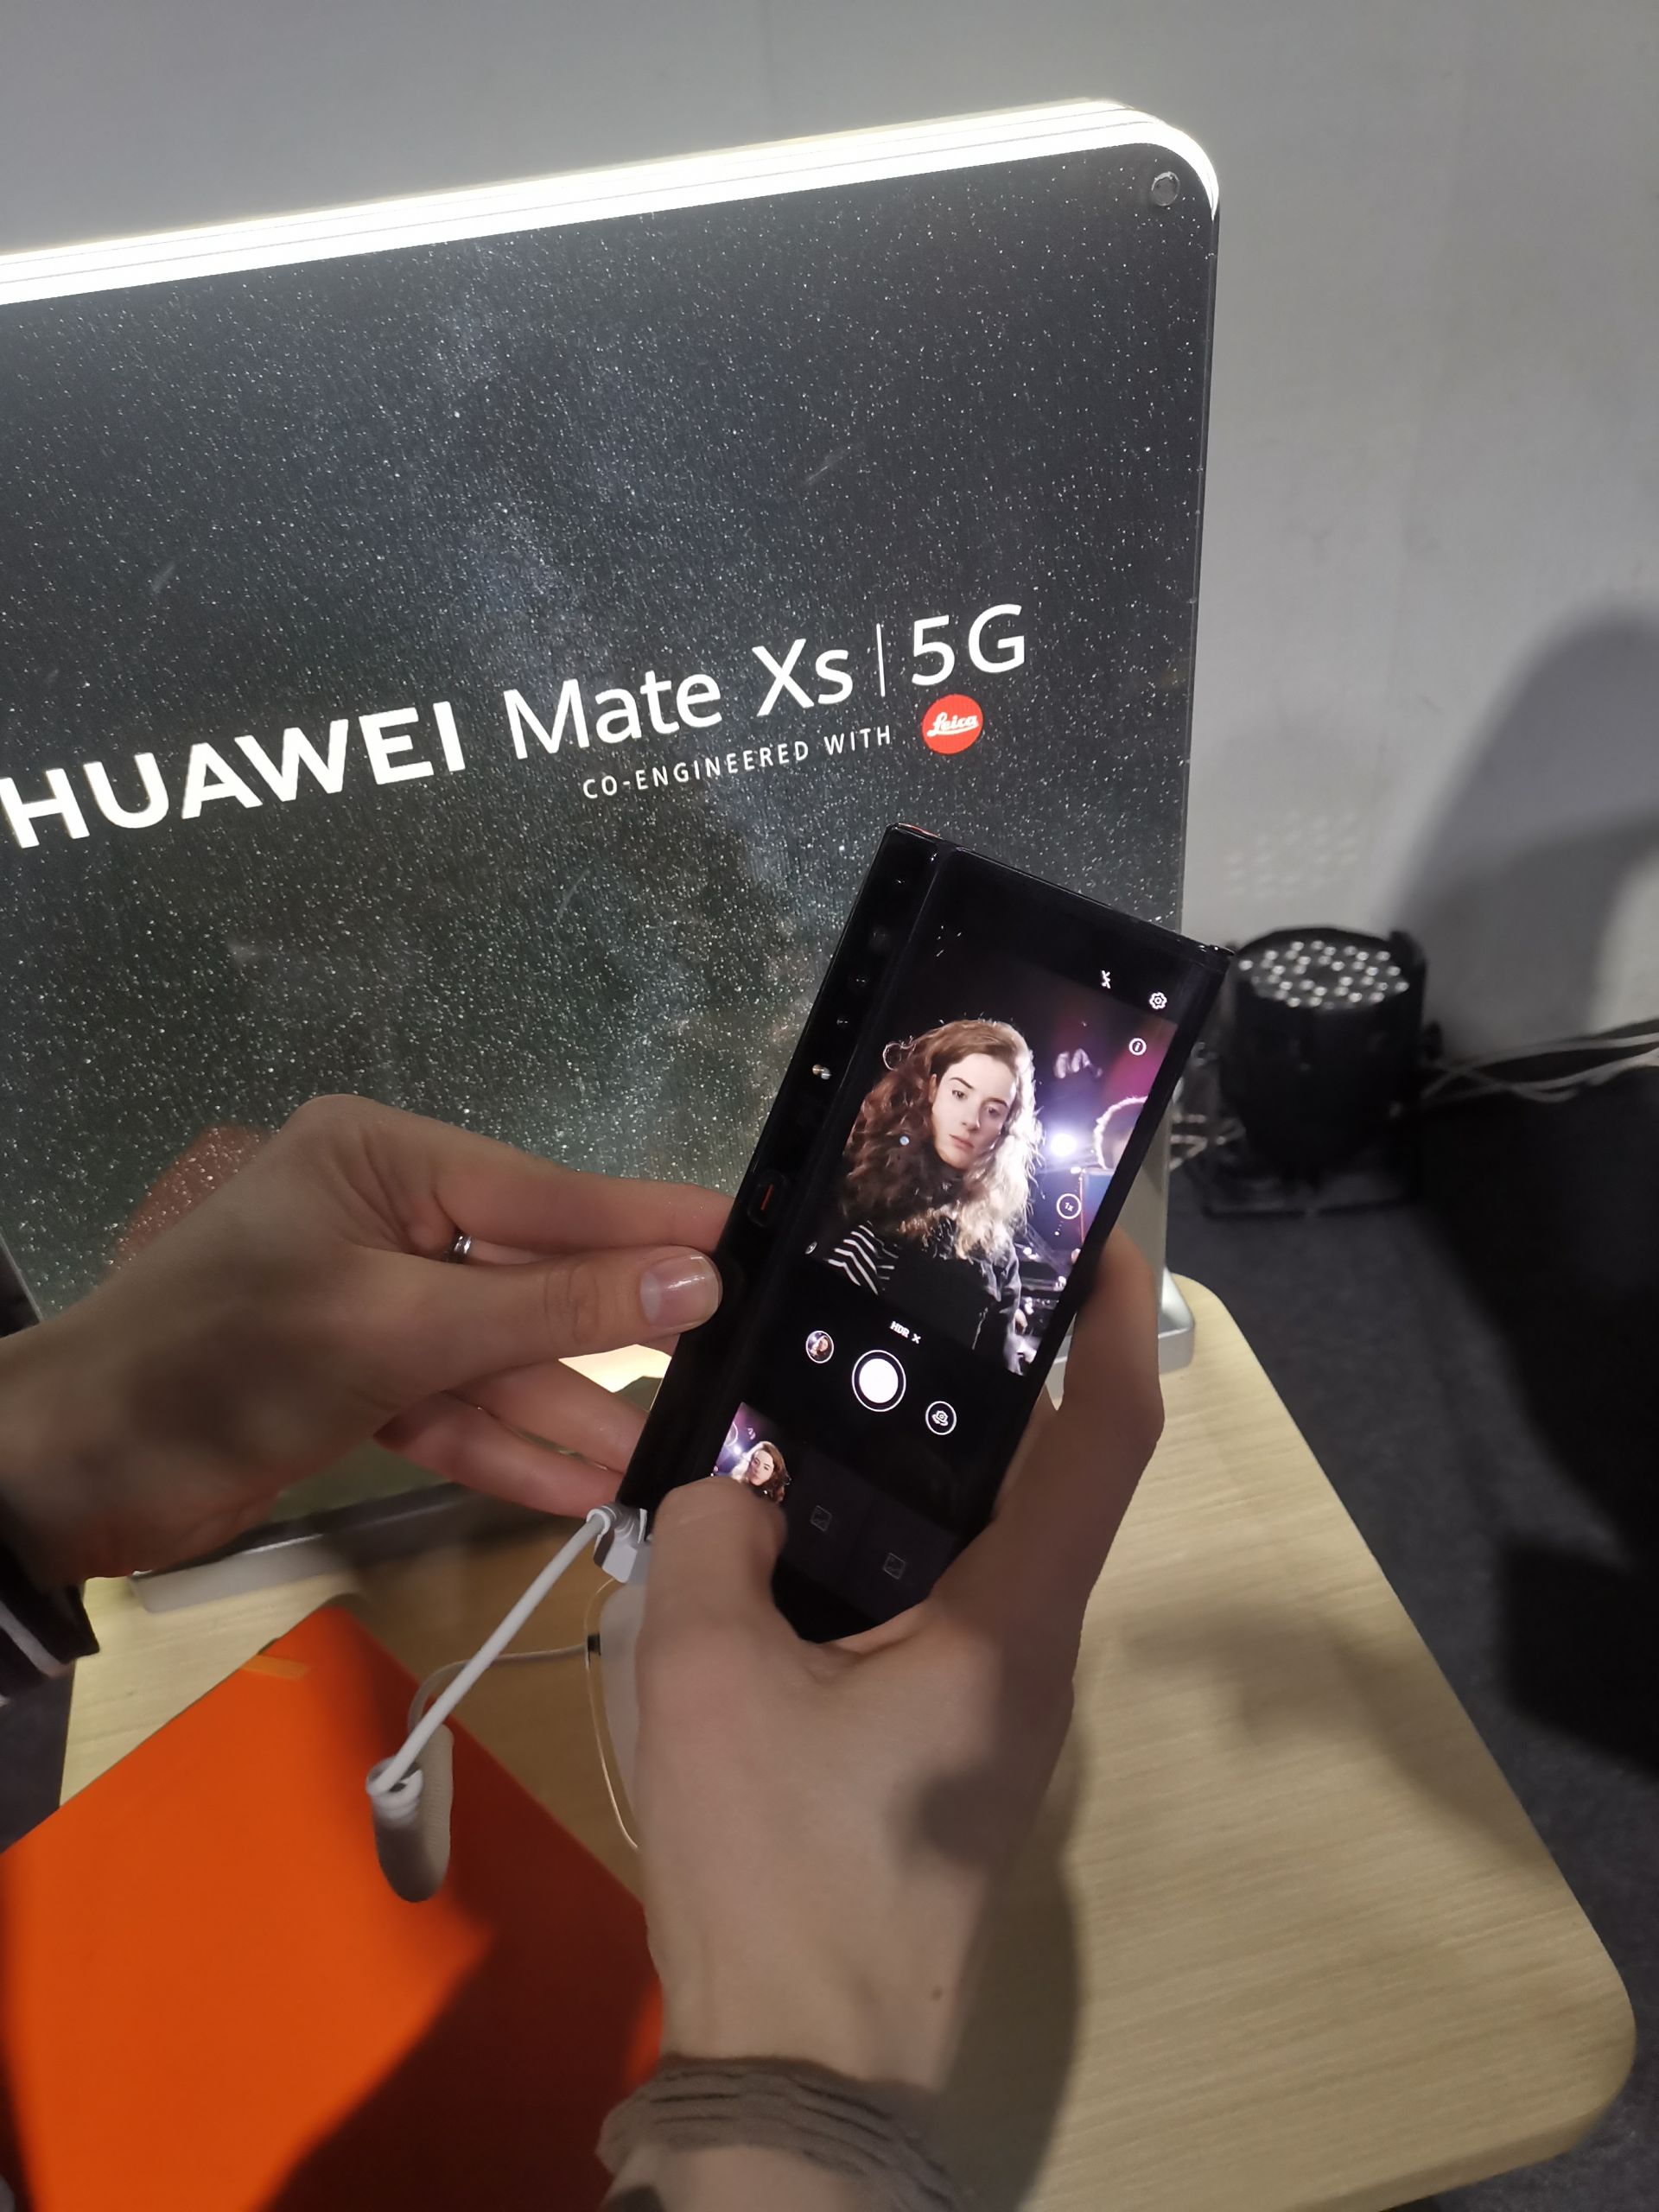 Huawei Mate XS